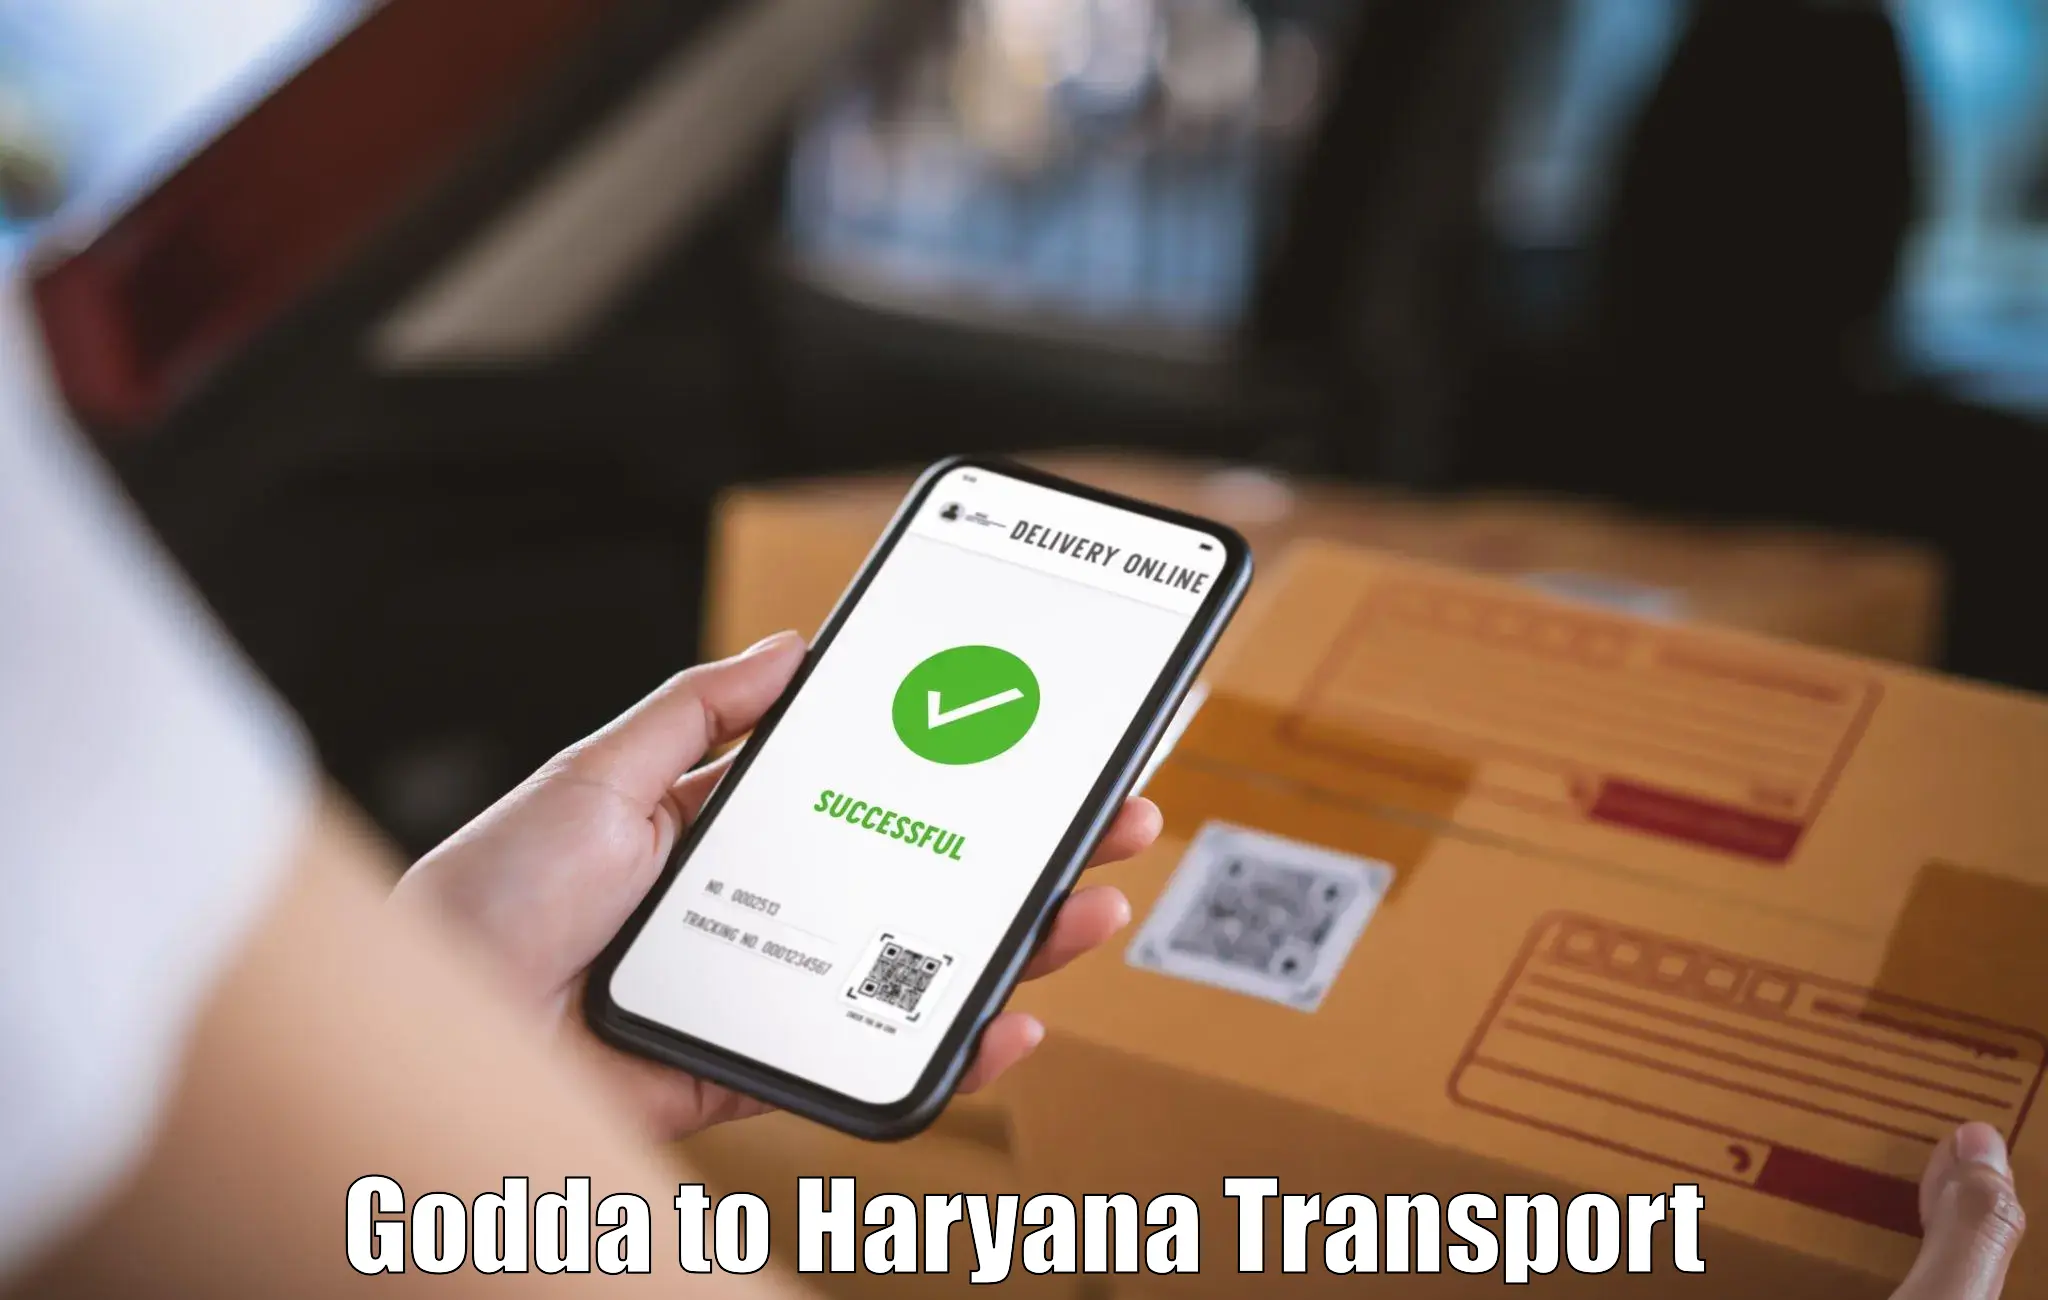 Vehicle transport services Godda to Chaudhary Charan Singh Haryana Agricultural University Hisar